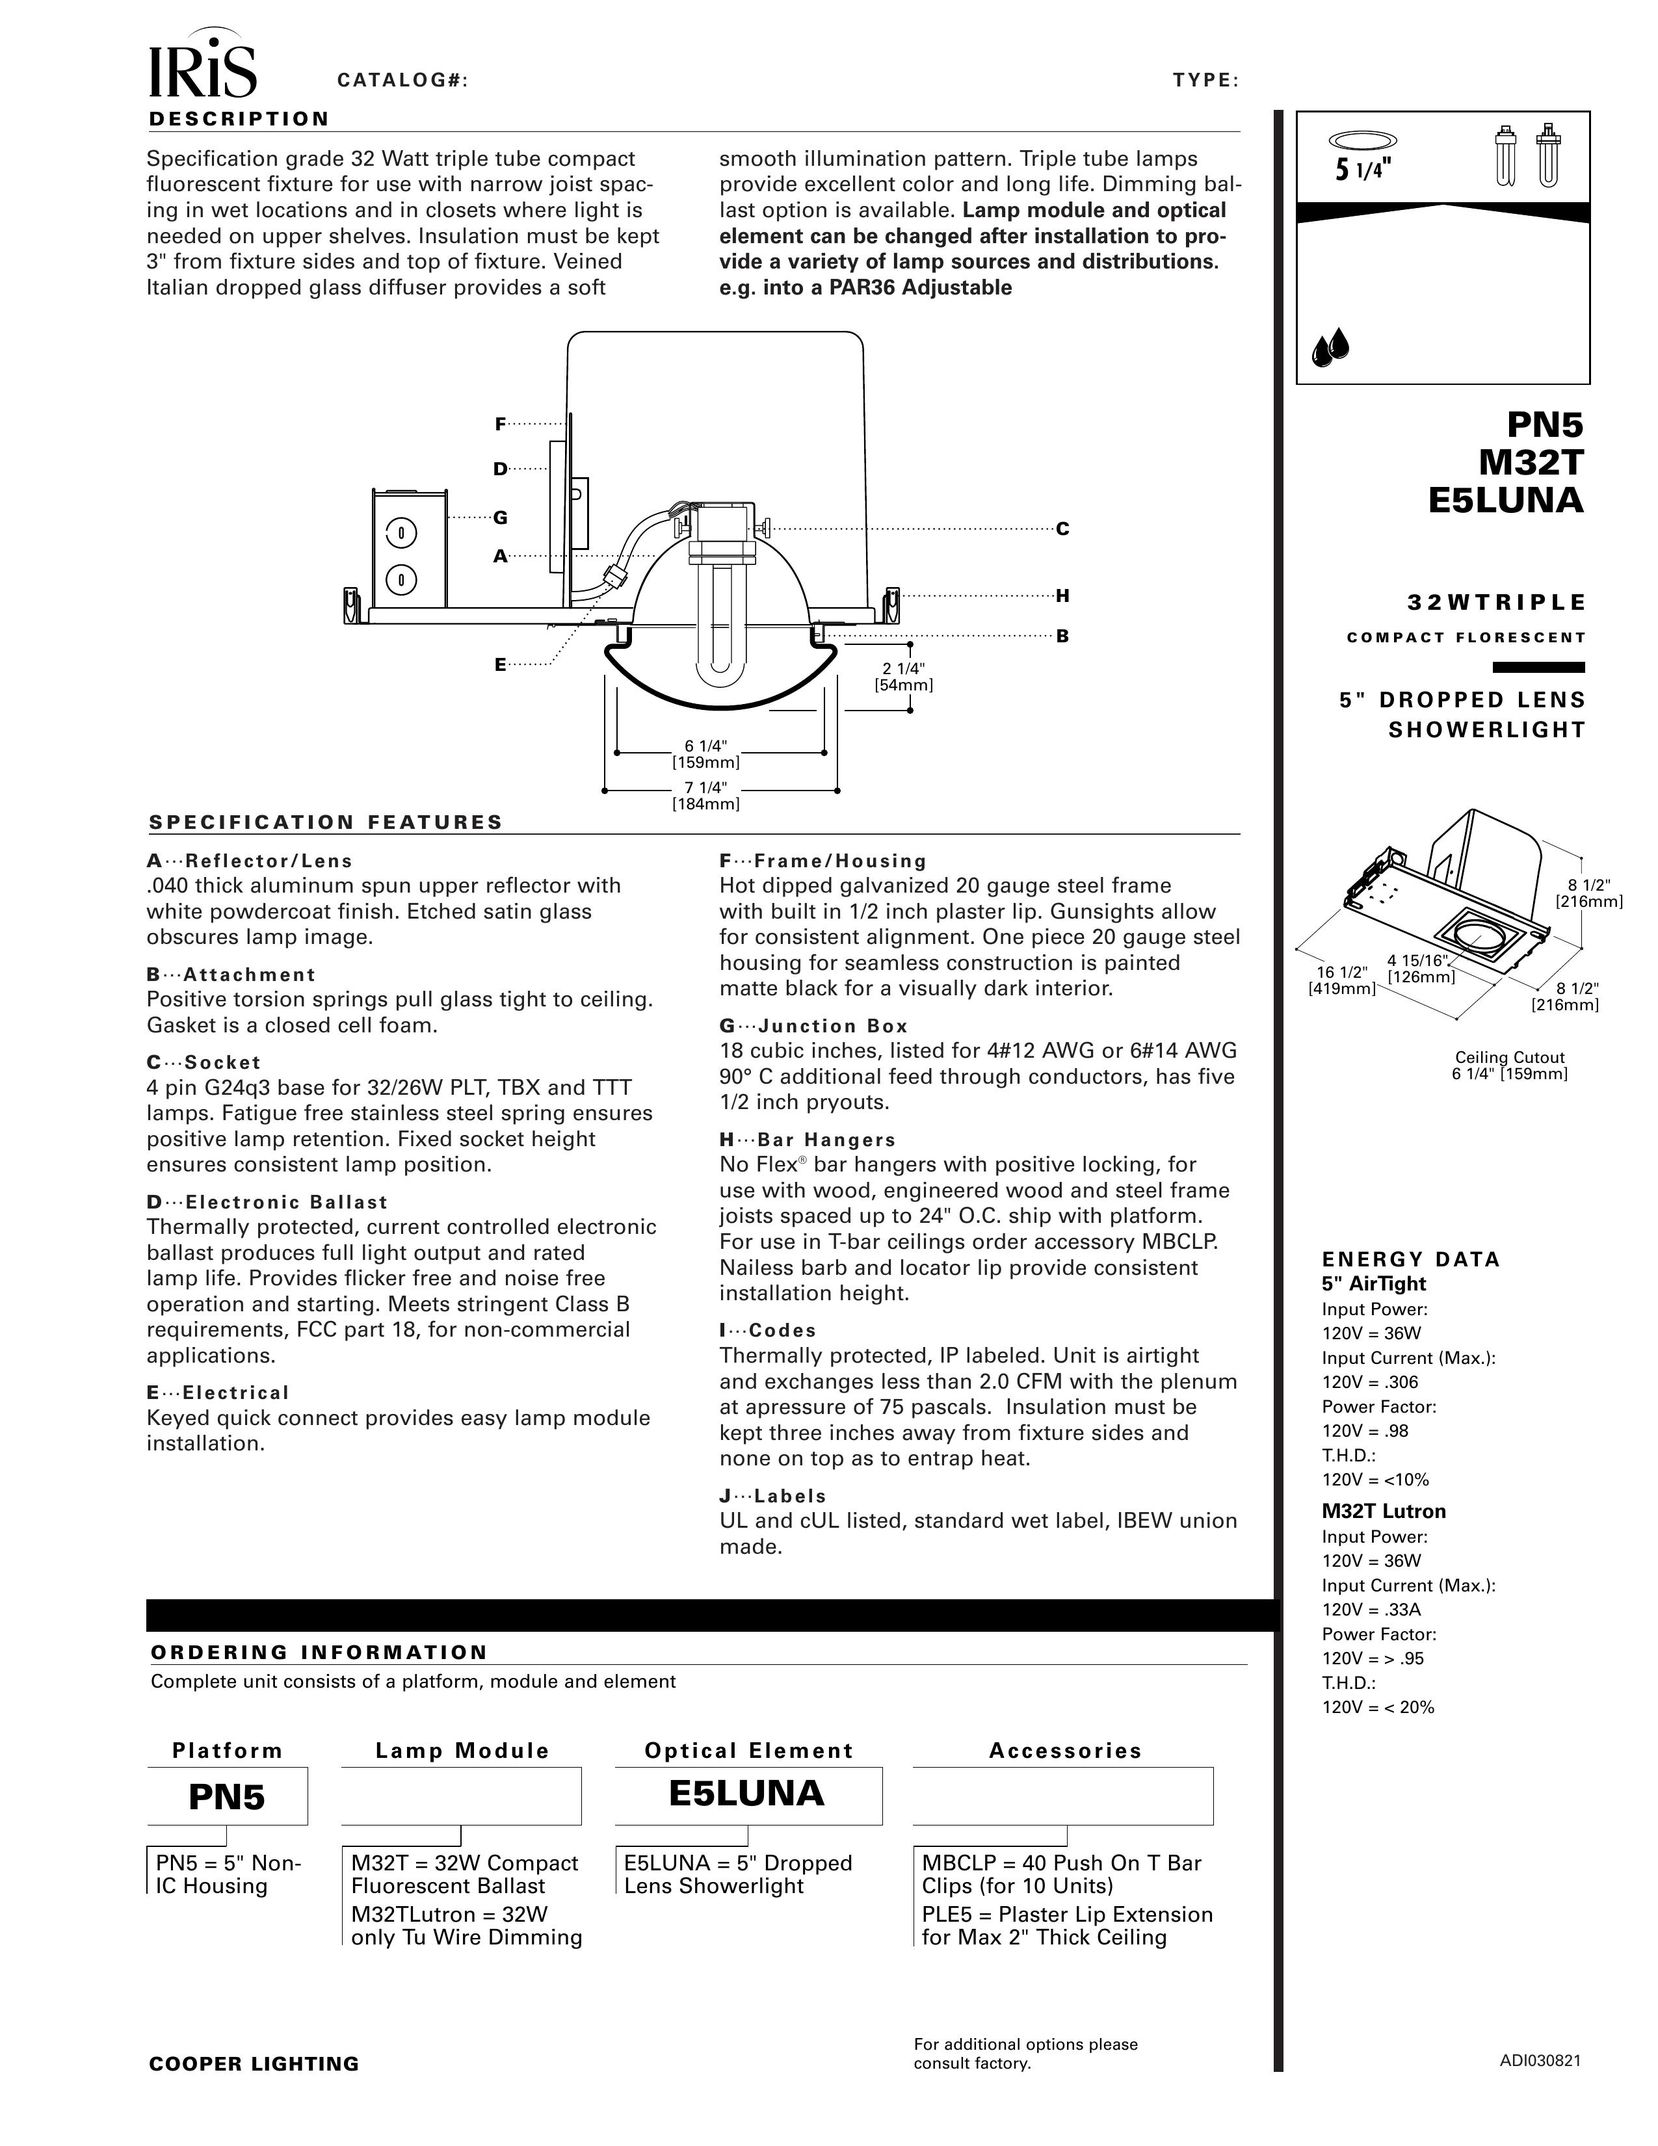 IRIS PN5 Indoor Furnishings User Manual